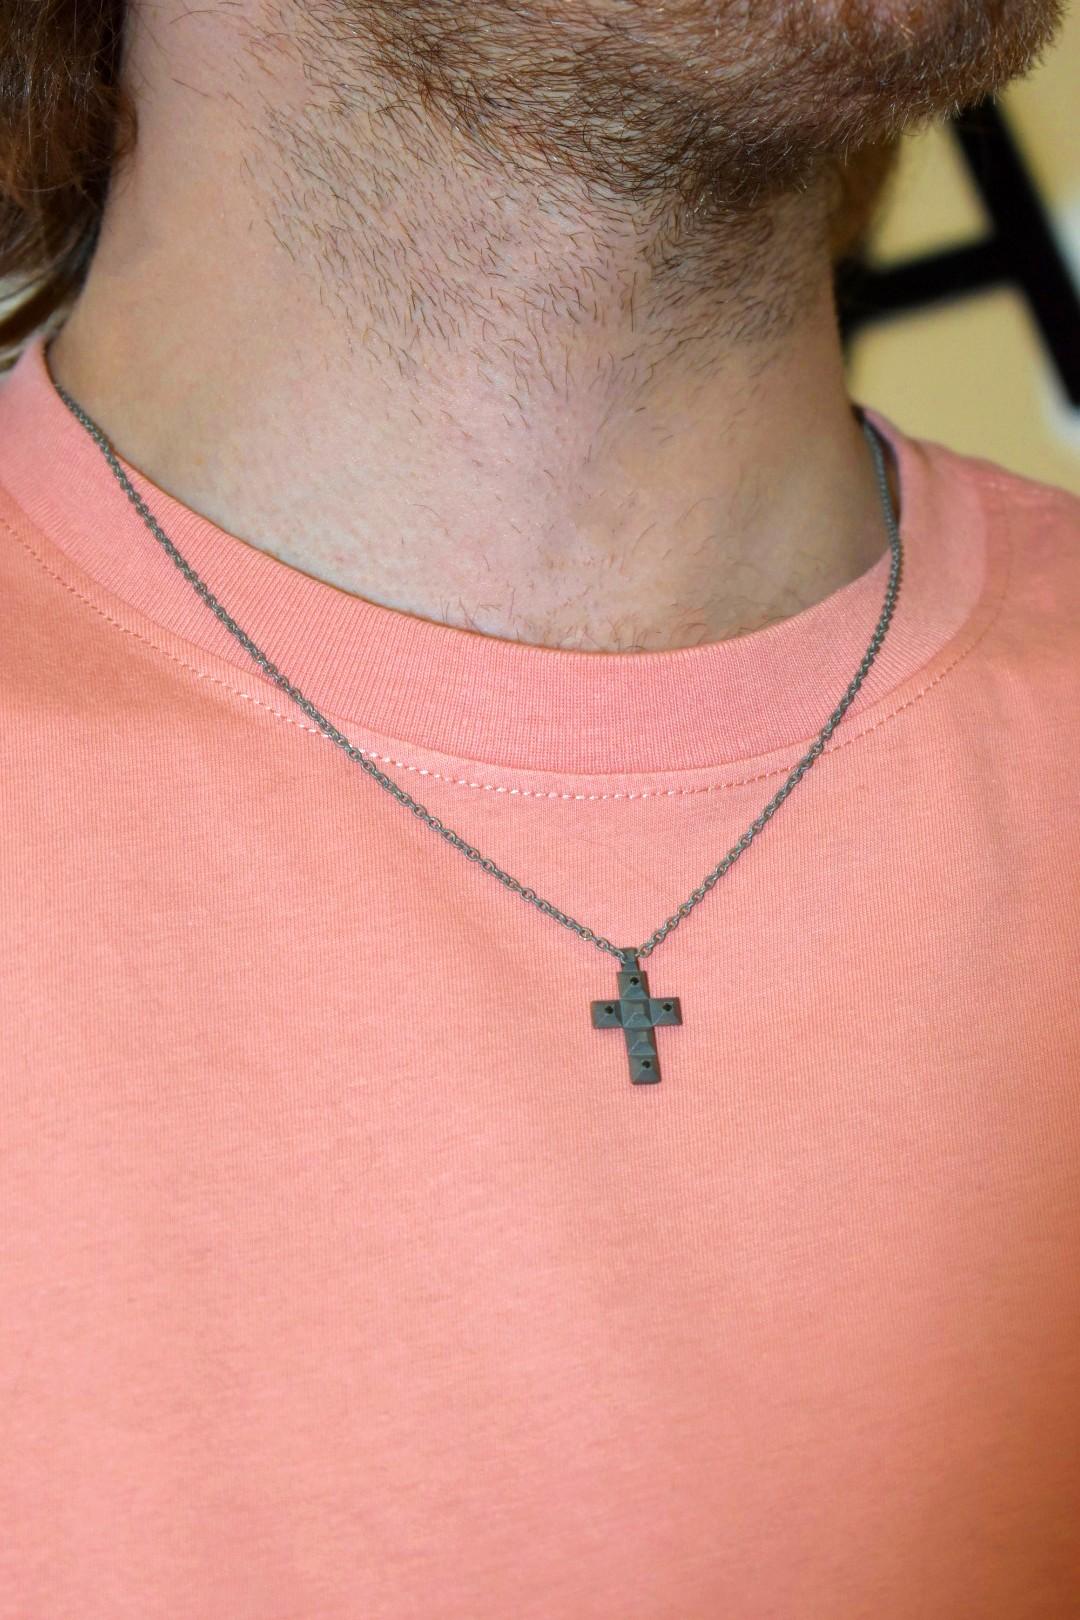 mens titanium cross necklace